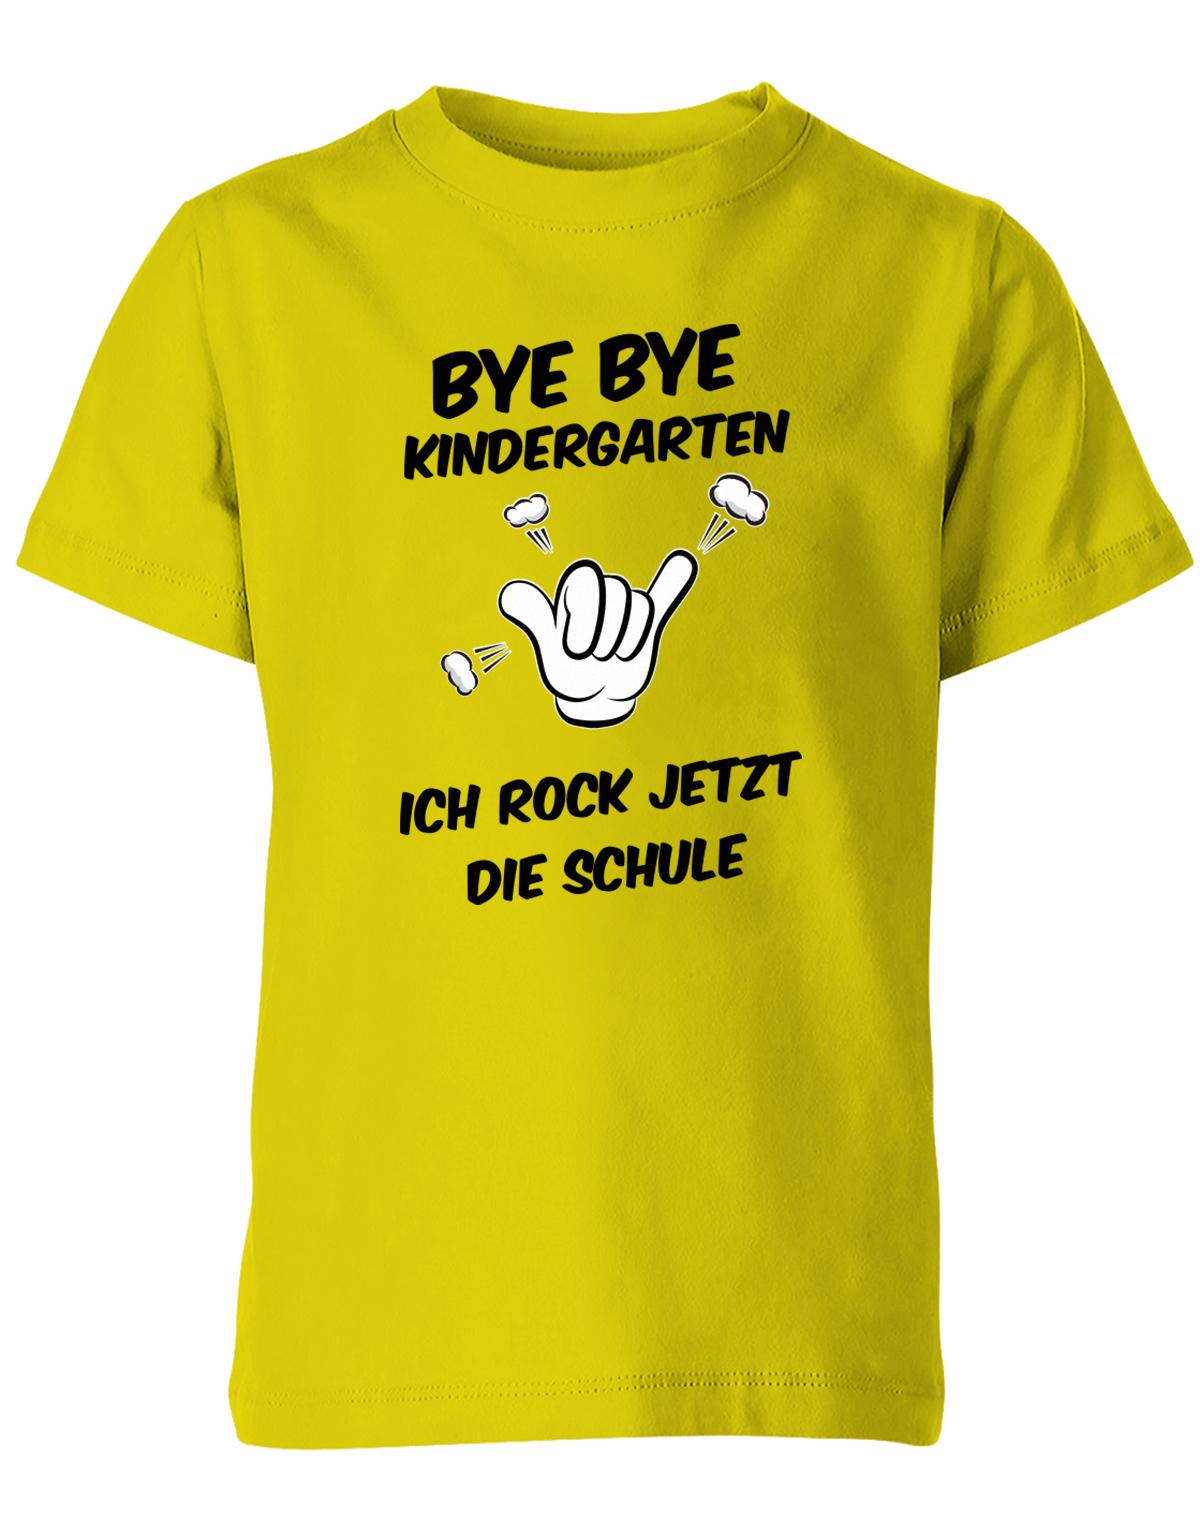 Bye bye Kindergarten ich rock jetzt die Schule - Einschulung - Kinder T-Shirt Gelbb